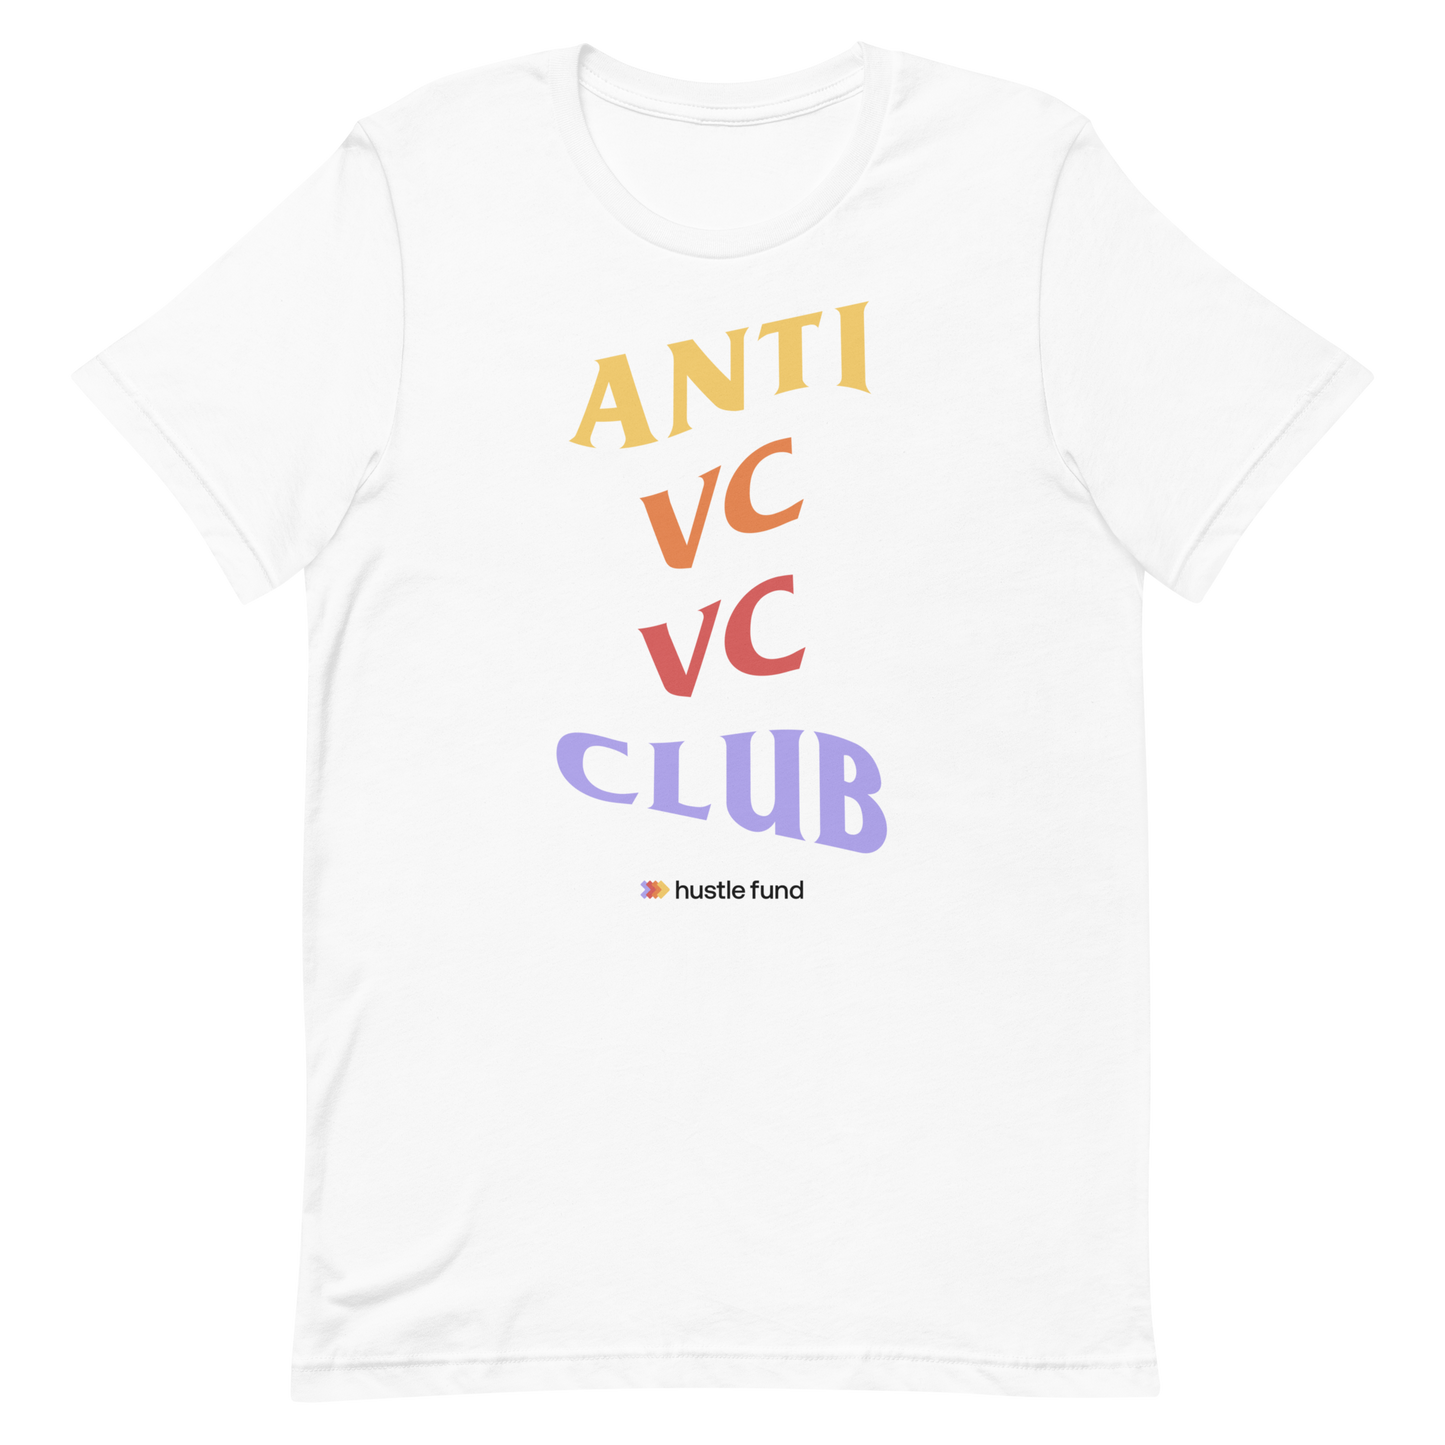 Anti VC VC Club T-Shirt